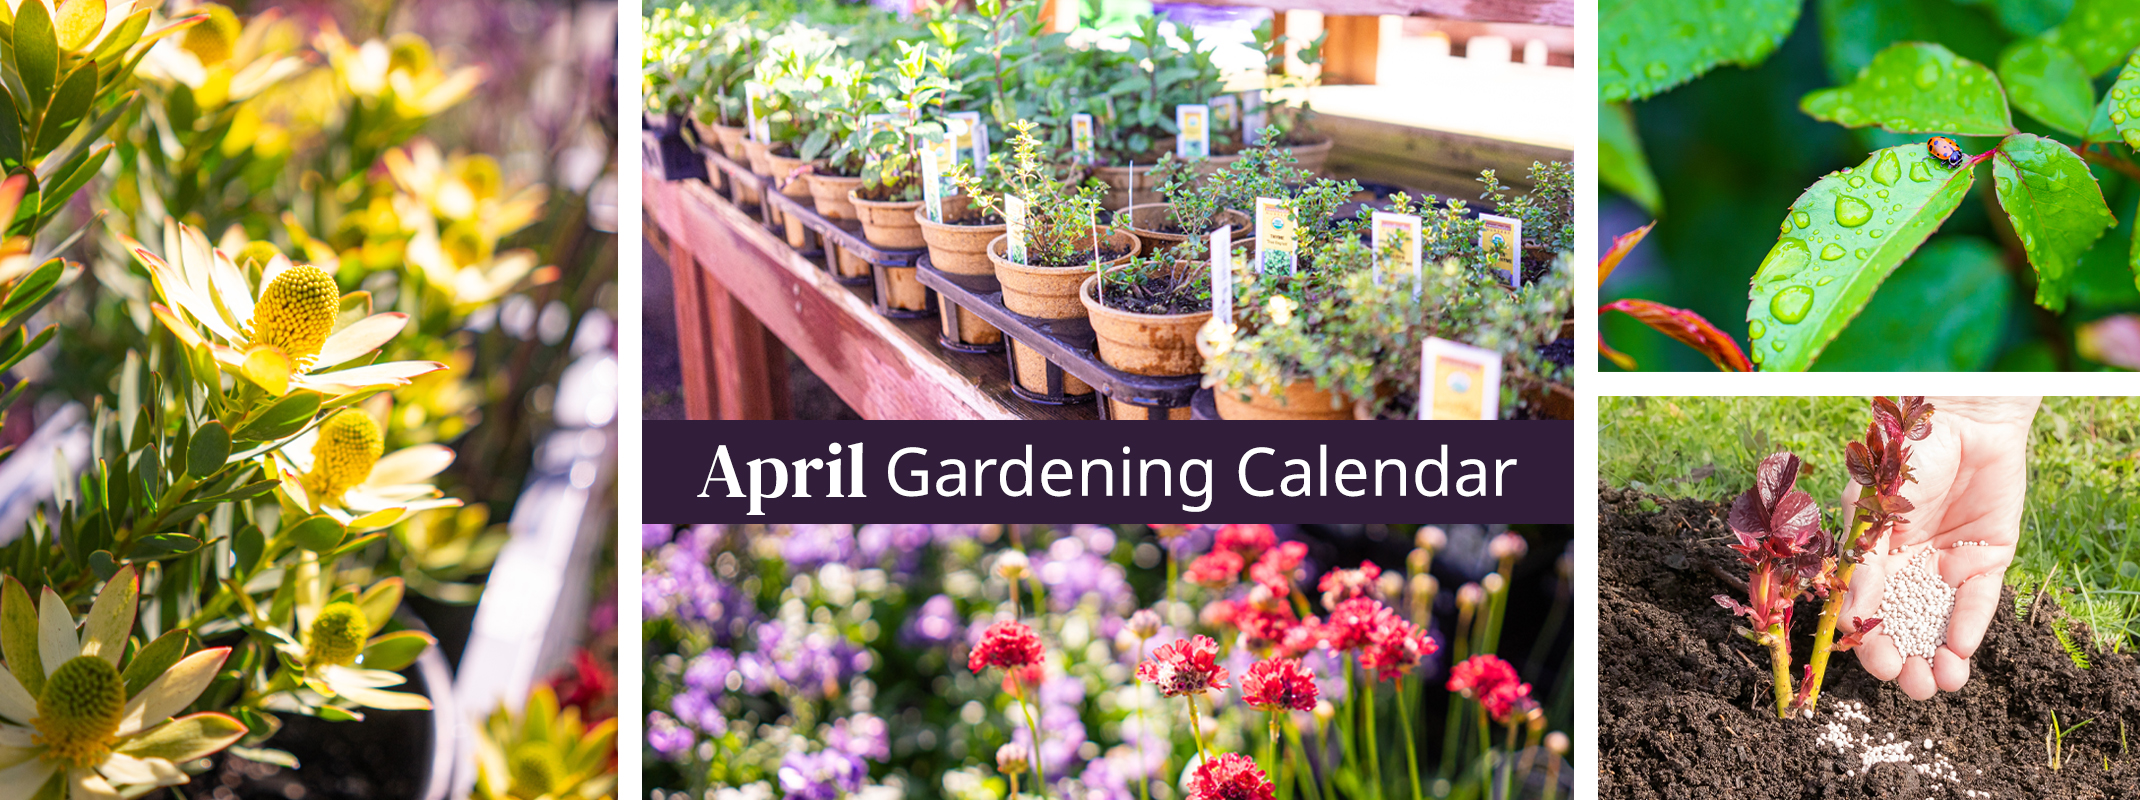 april gardening calendar protea shrub, herbs, perennials, ladybug on healthy leaf and fertiliing shrub